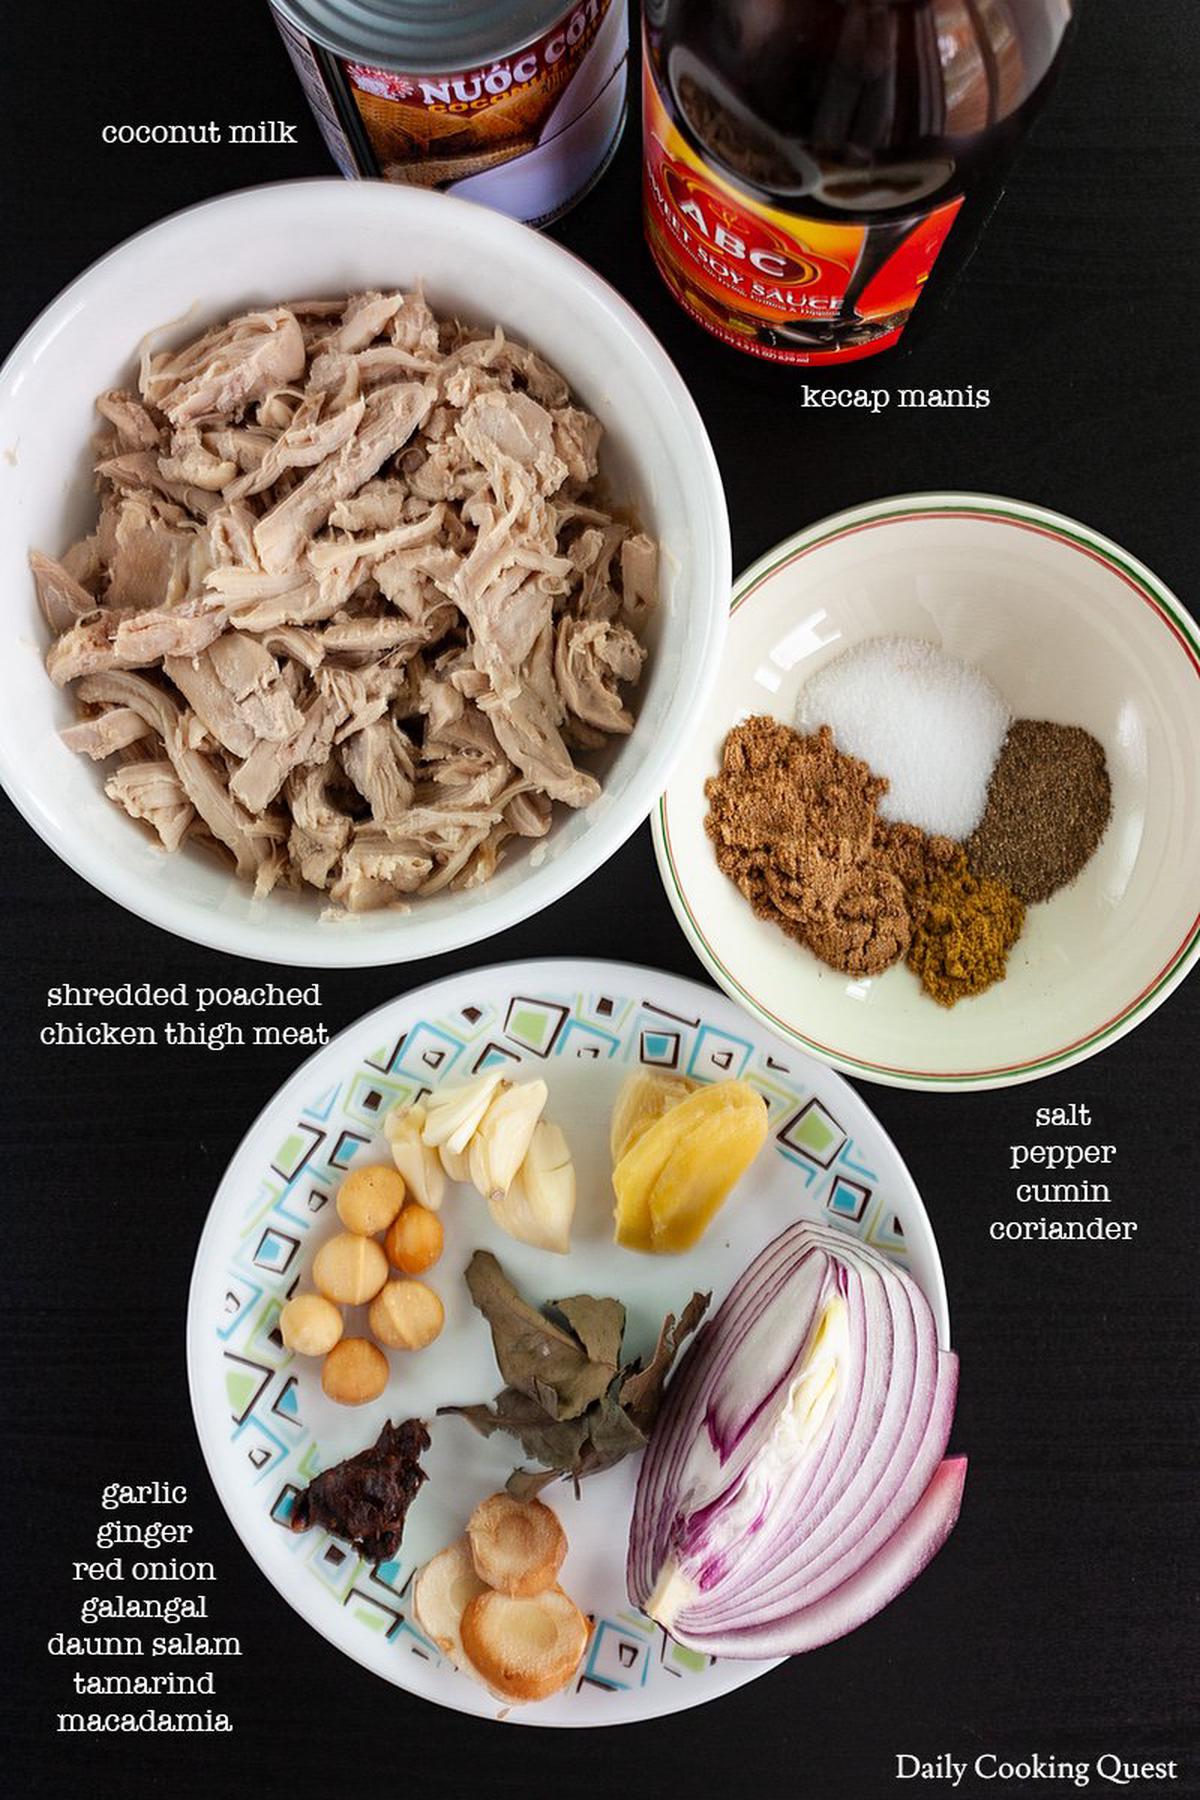 Ayam Suwir Saus Empal - Chicken in Spices & Coconut Milk Sauce